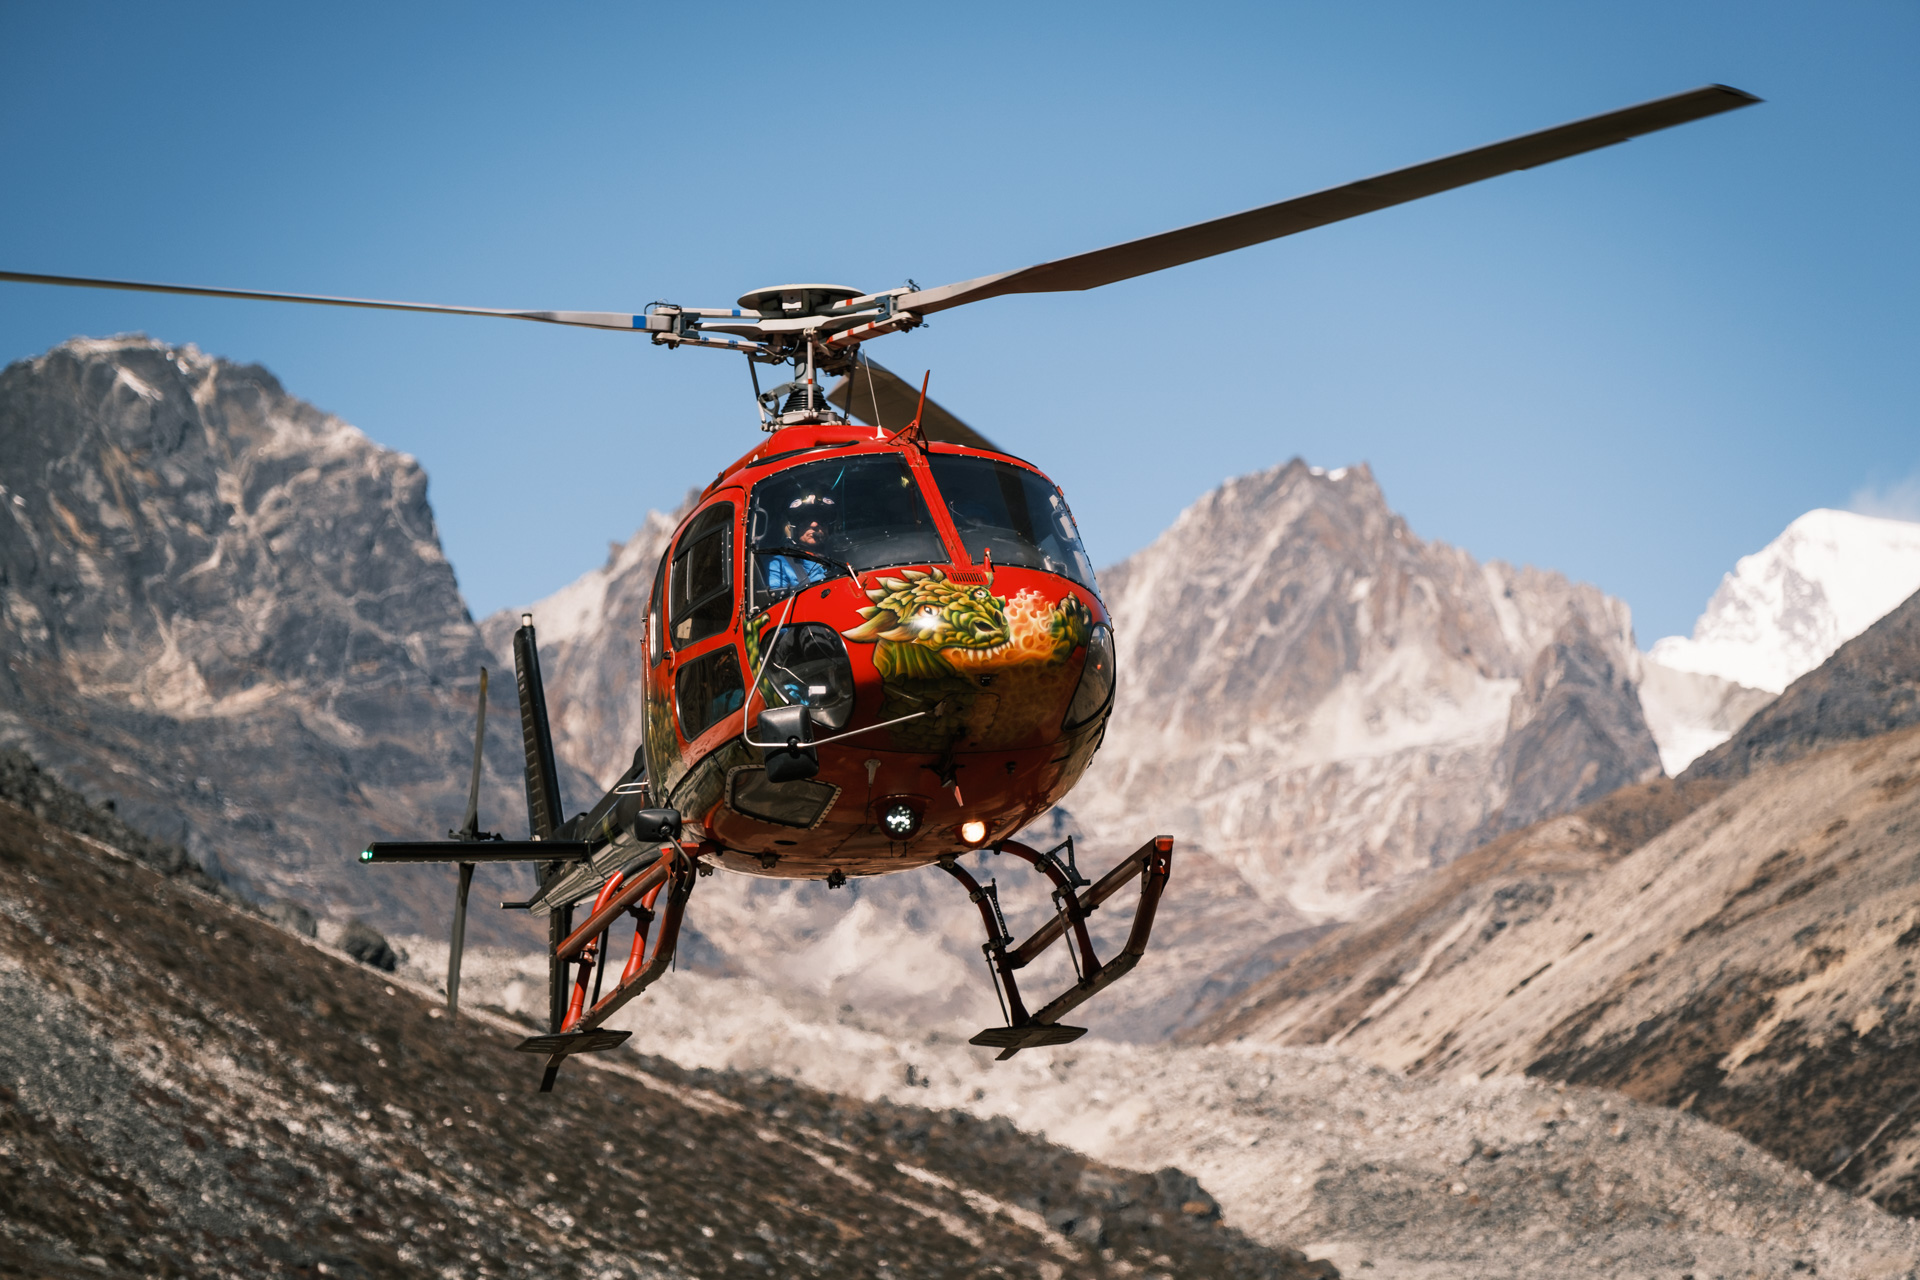 Unser Hubschrauber landet nach dem Flug zum Everest Aussichtspunkt.